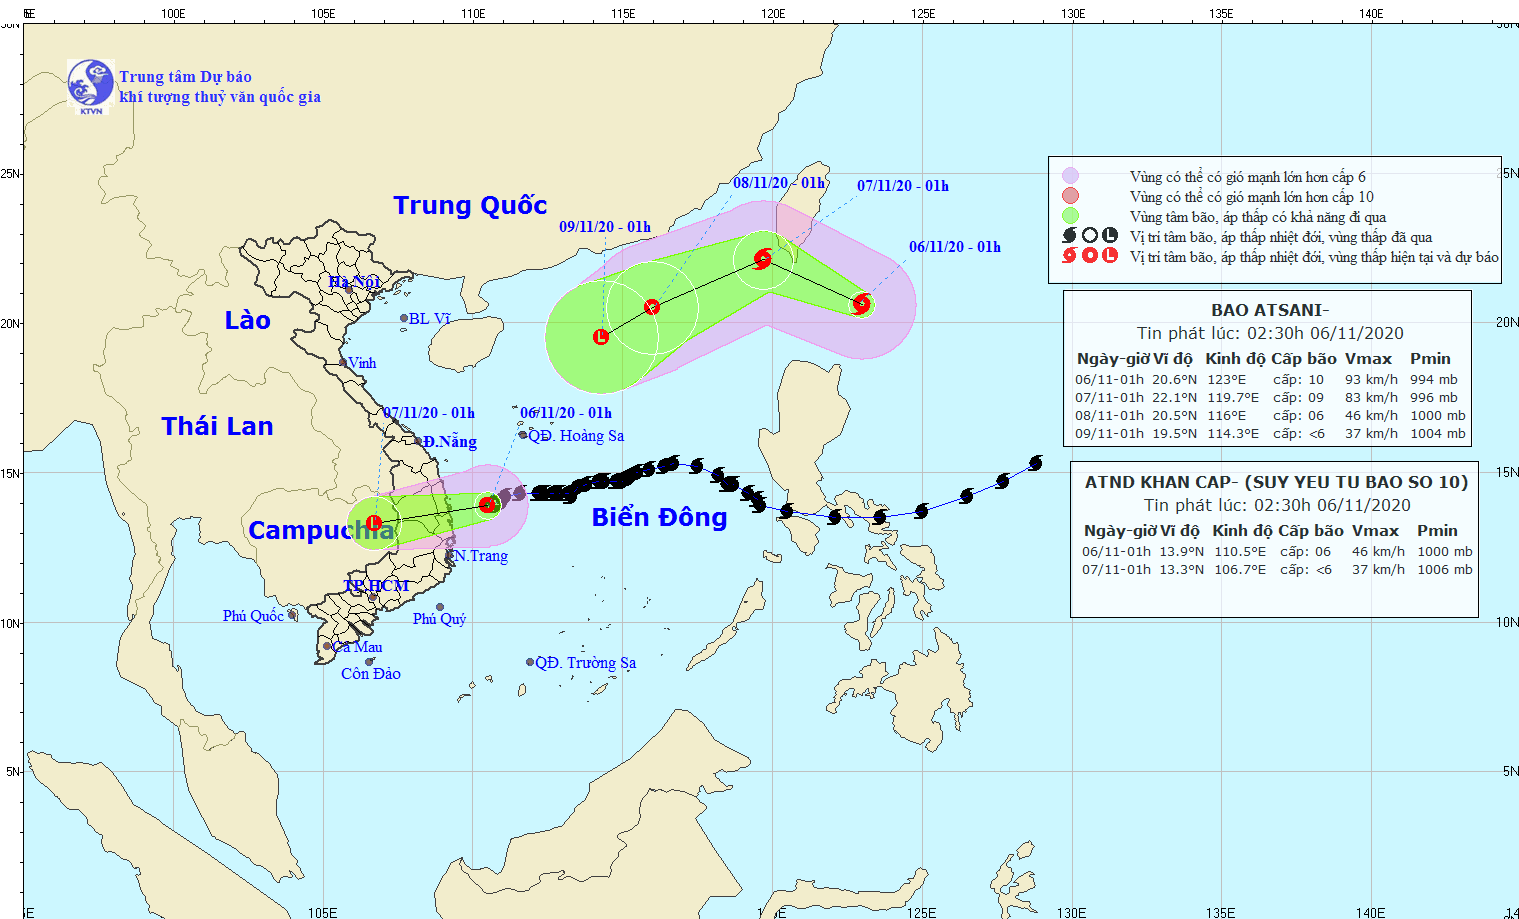 Tin bão gần biển Đông (Bão Atsani): Cách Philippines 290km, gió giật cấp 12